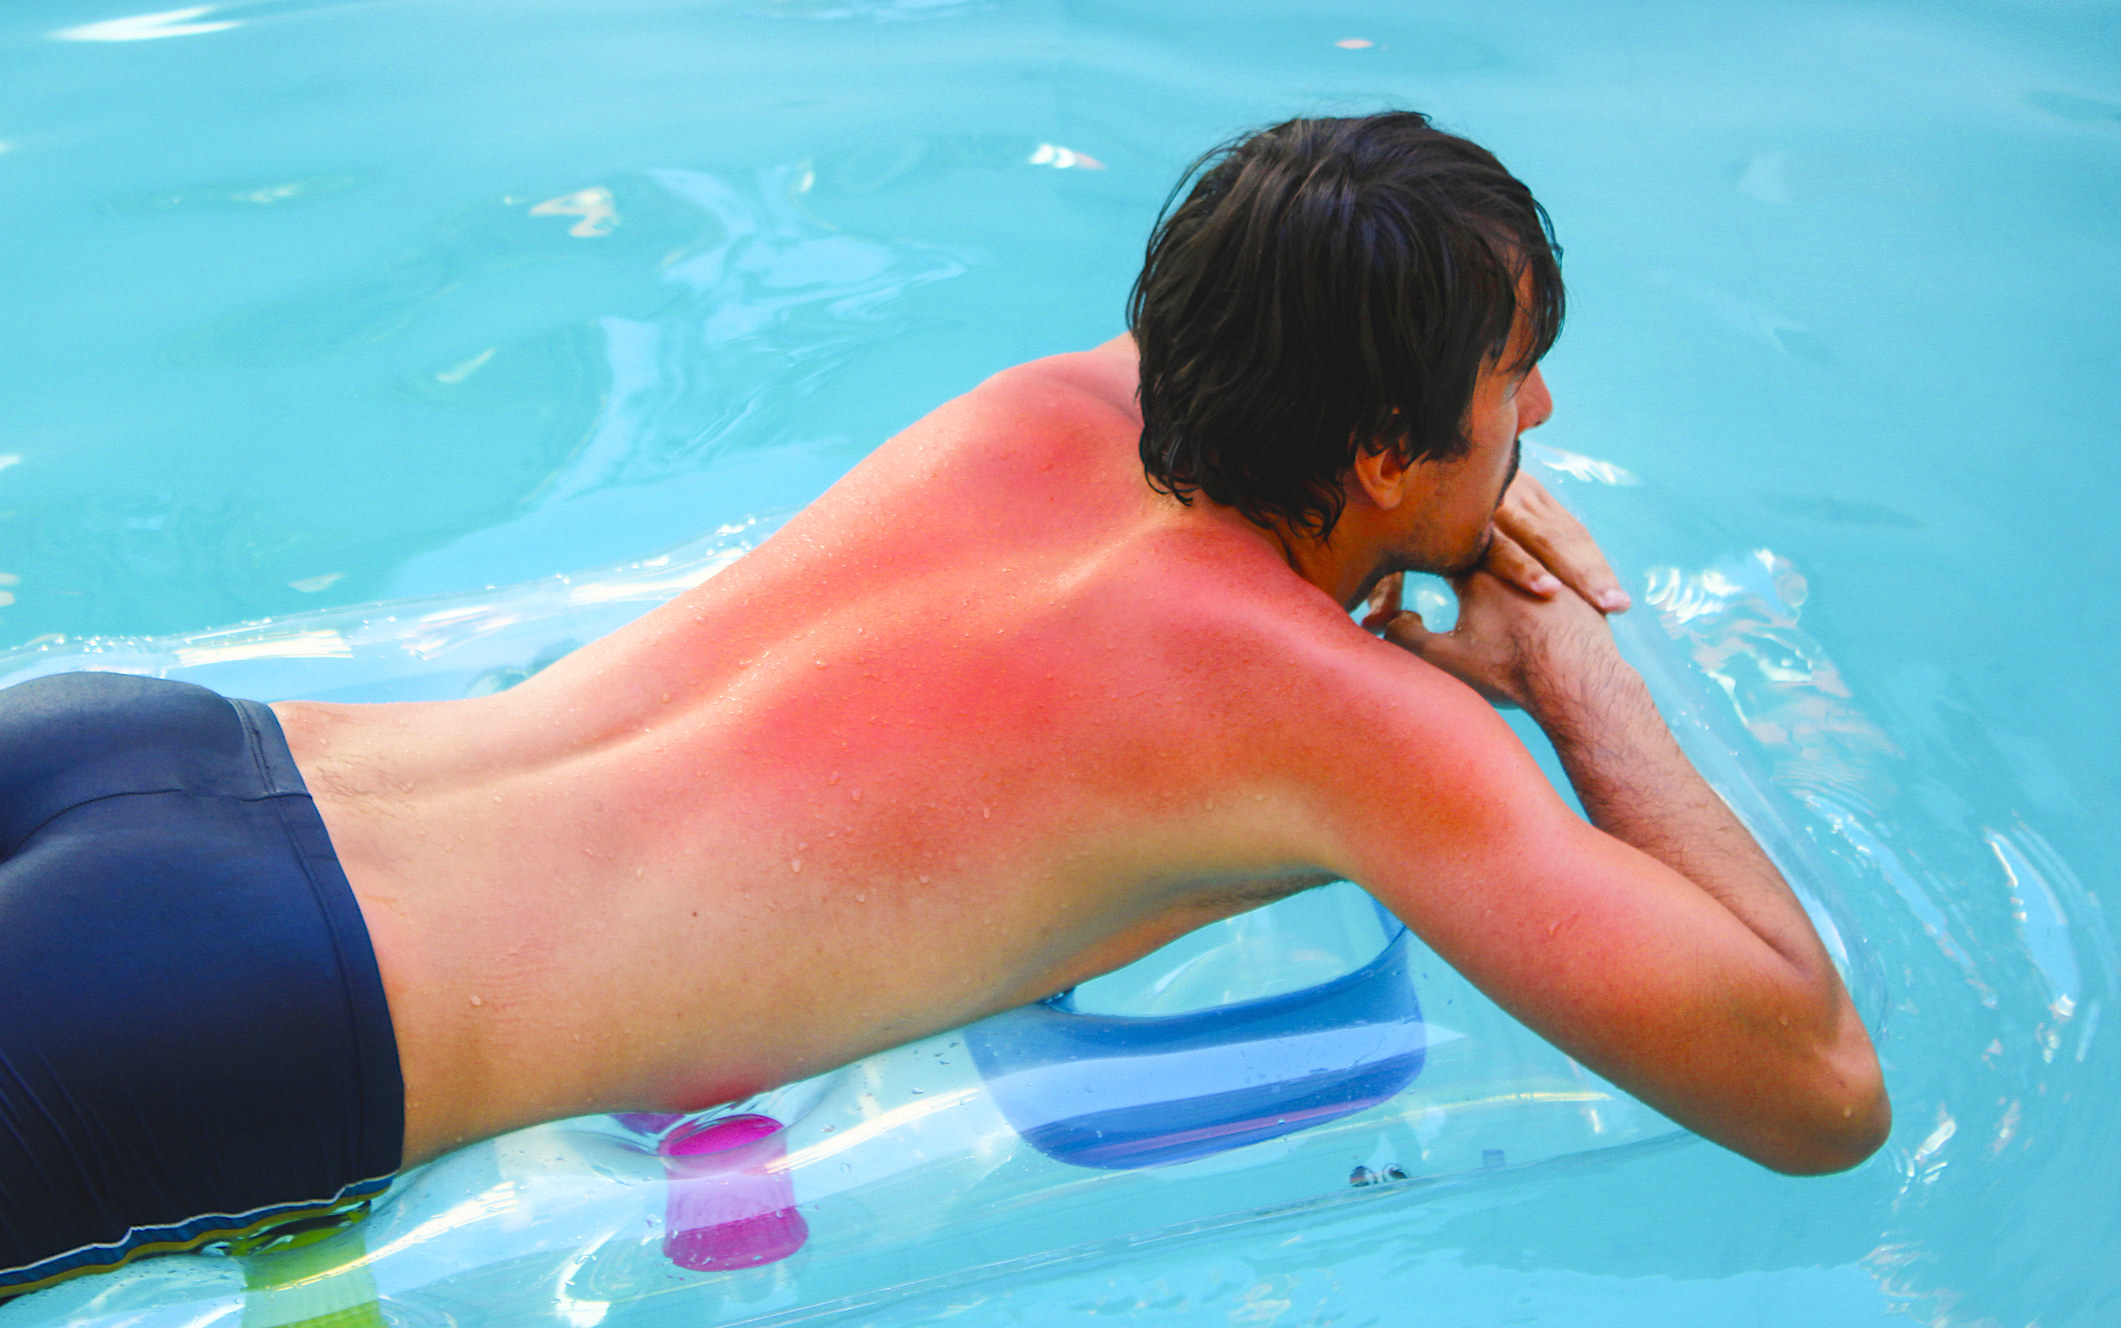 A man sunbathing on a lilo in a pool with sunburn.